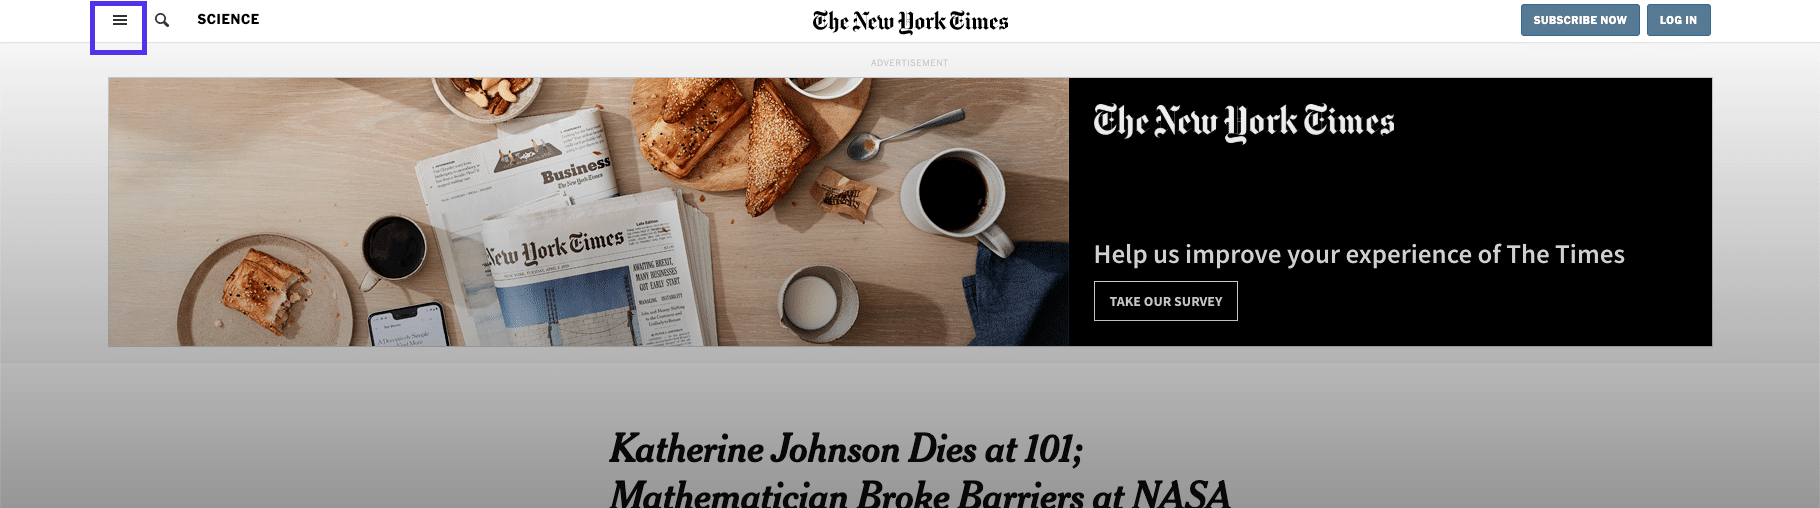 Articolo del NYT - menu dell’header